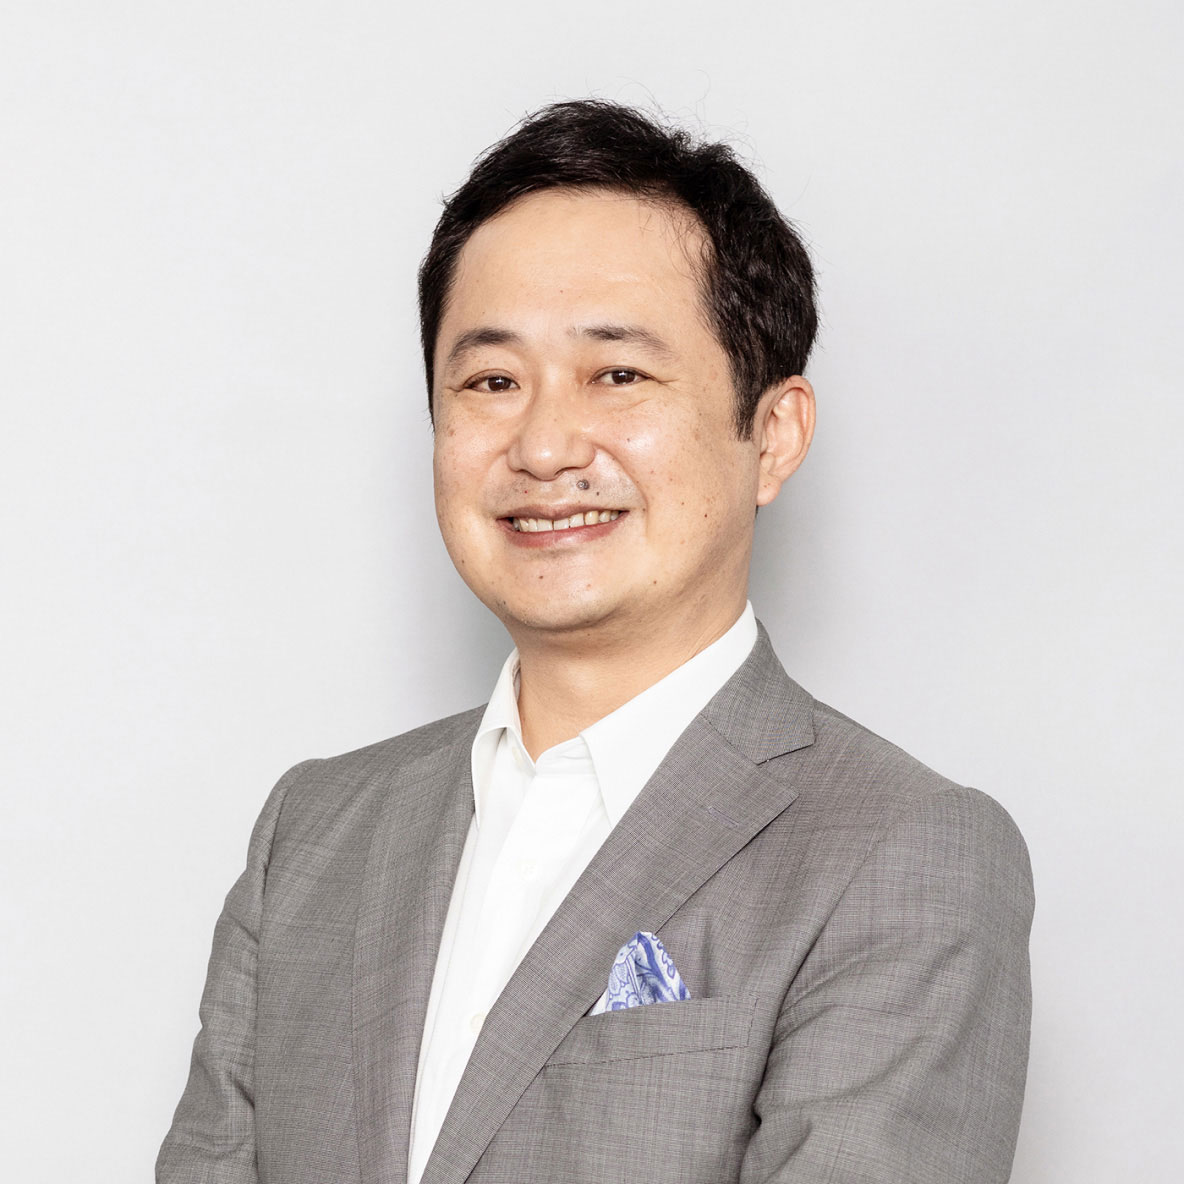 代表取締役社長兼CEO 岡村 信悟